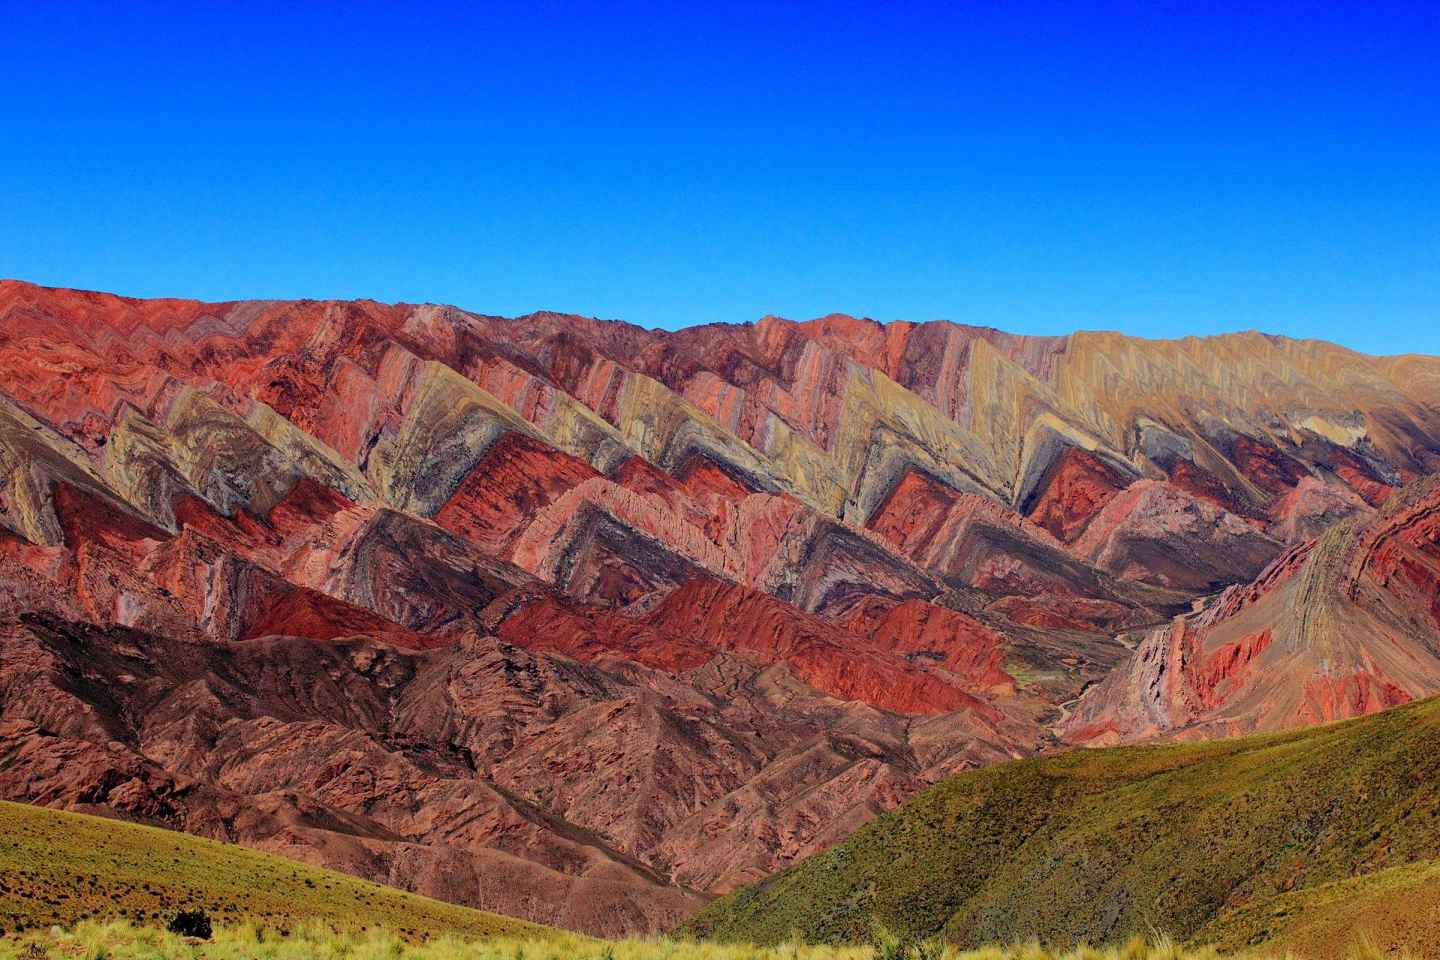 Hornocal: Berg der 14 Farben & Quebrada de Humahuaca